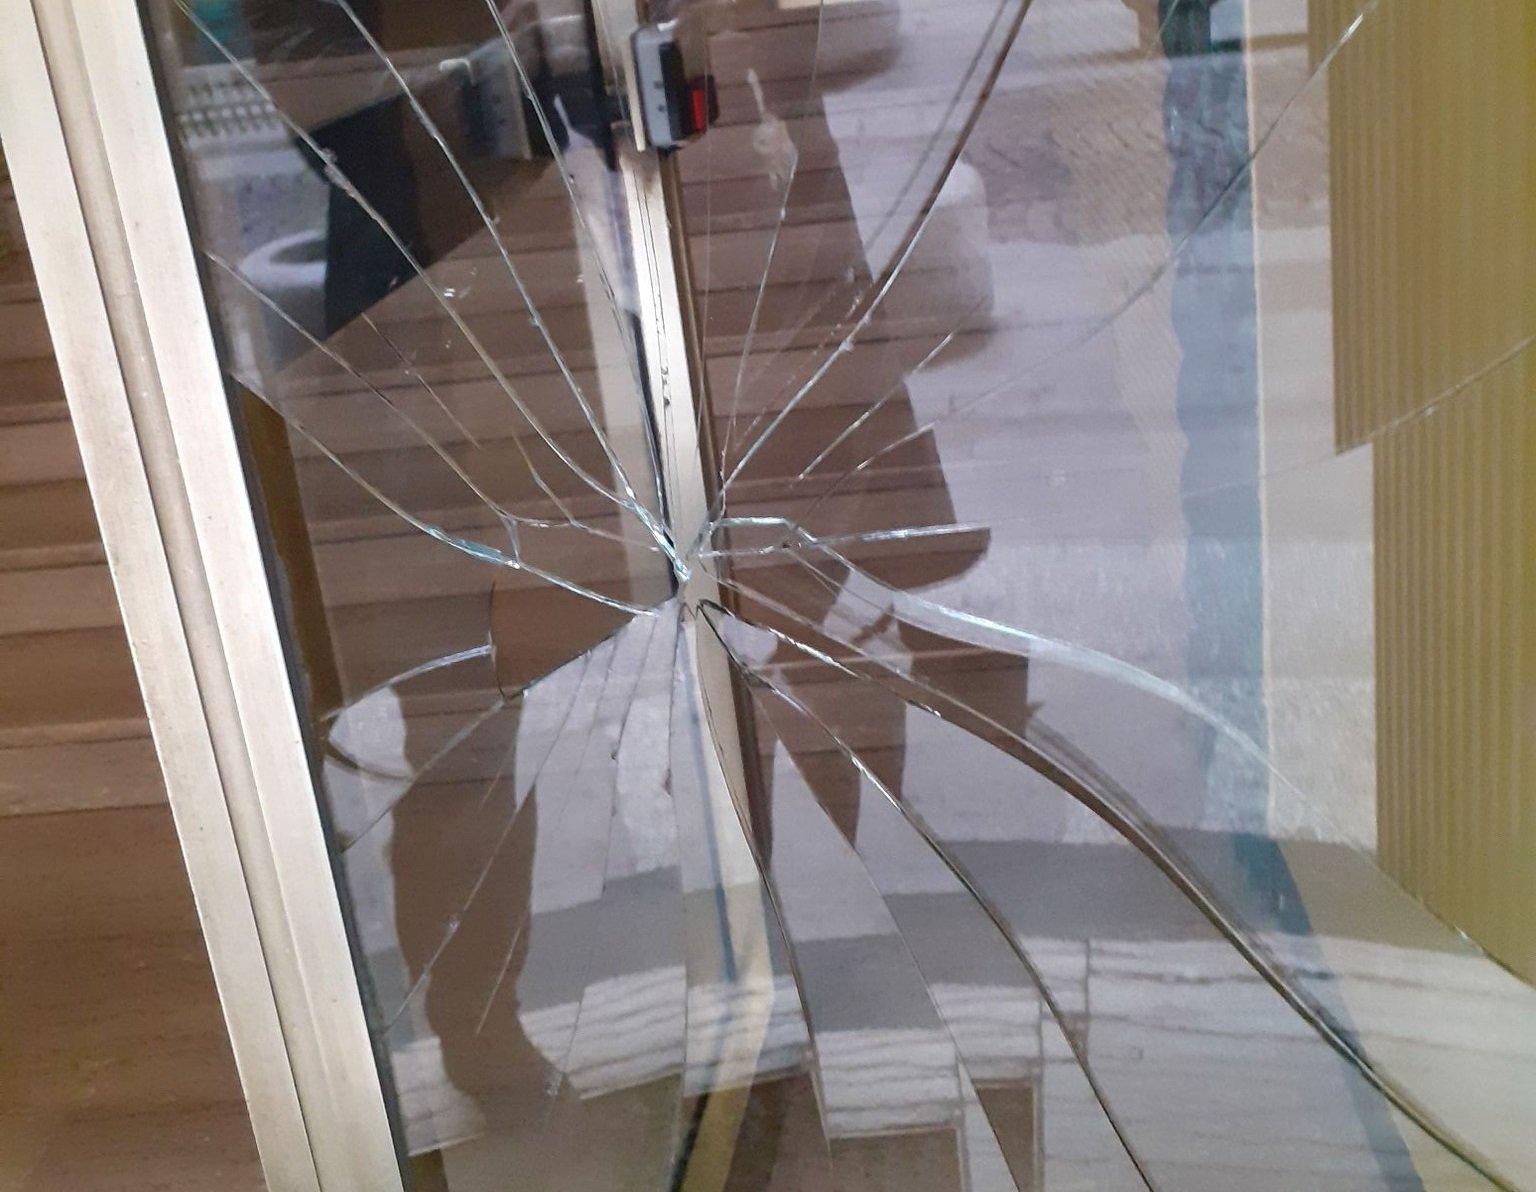 Nuovi atti vandalici in via Caniggia ad Alessandria: spaccato il portone di un palazzo